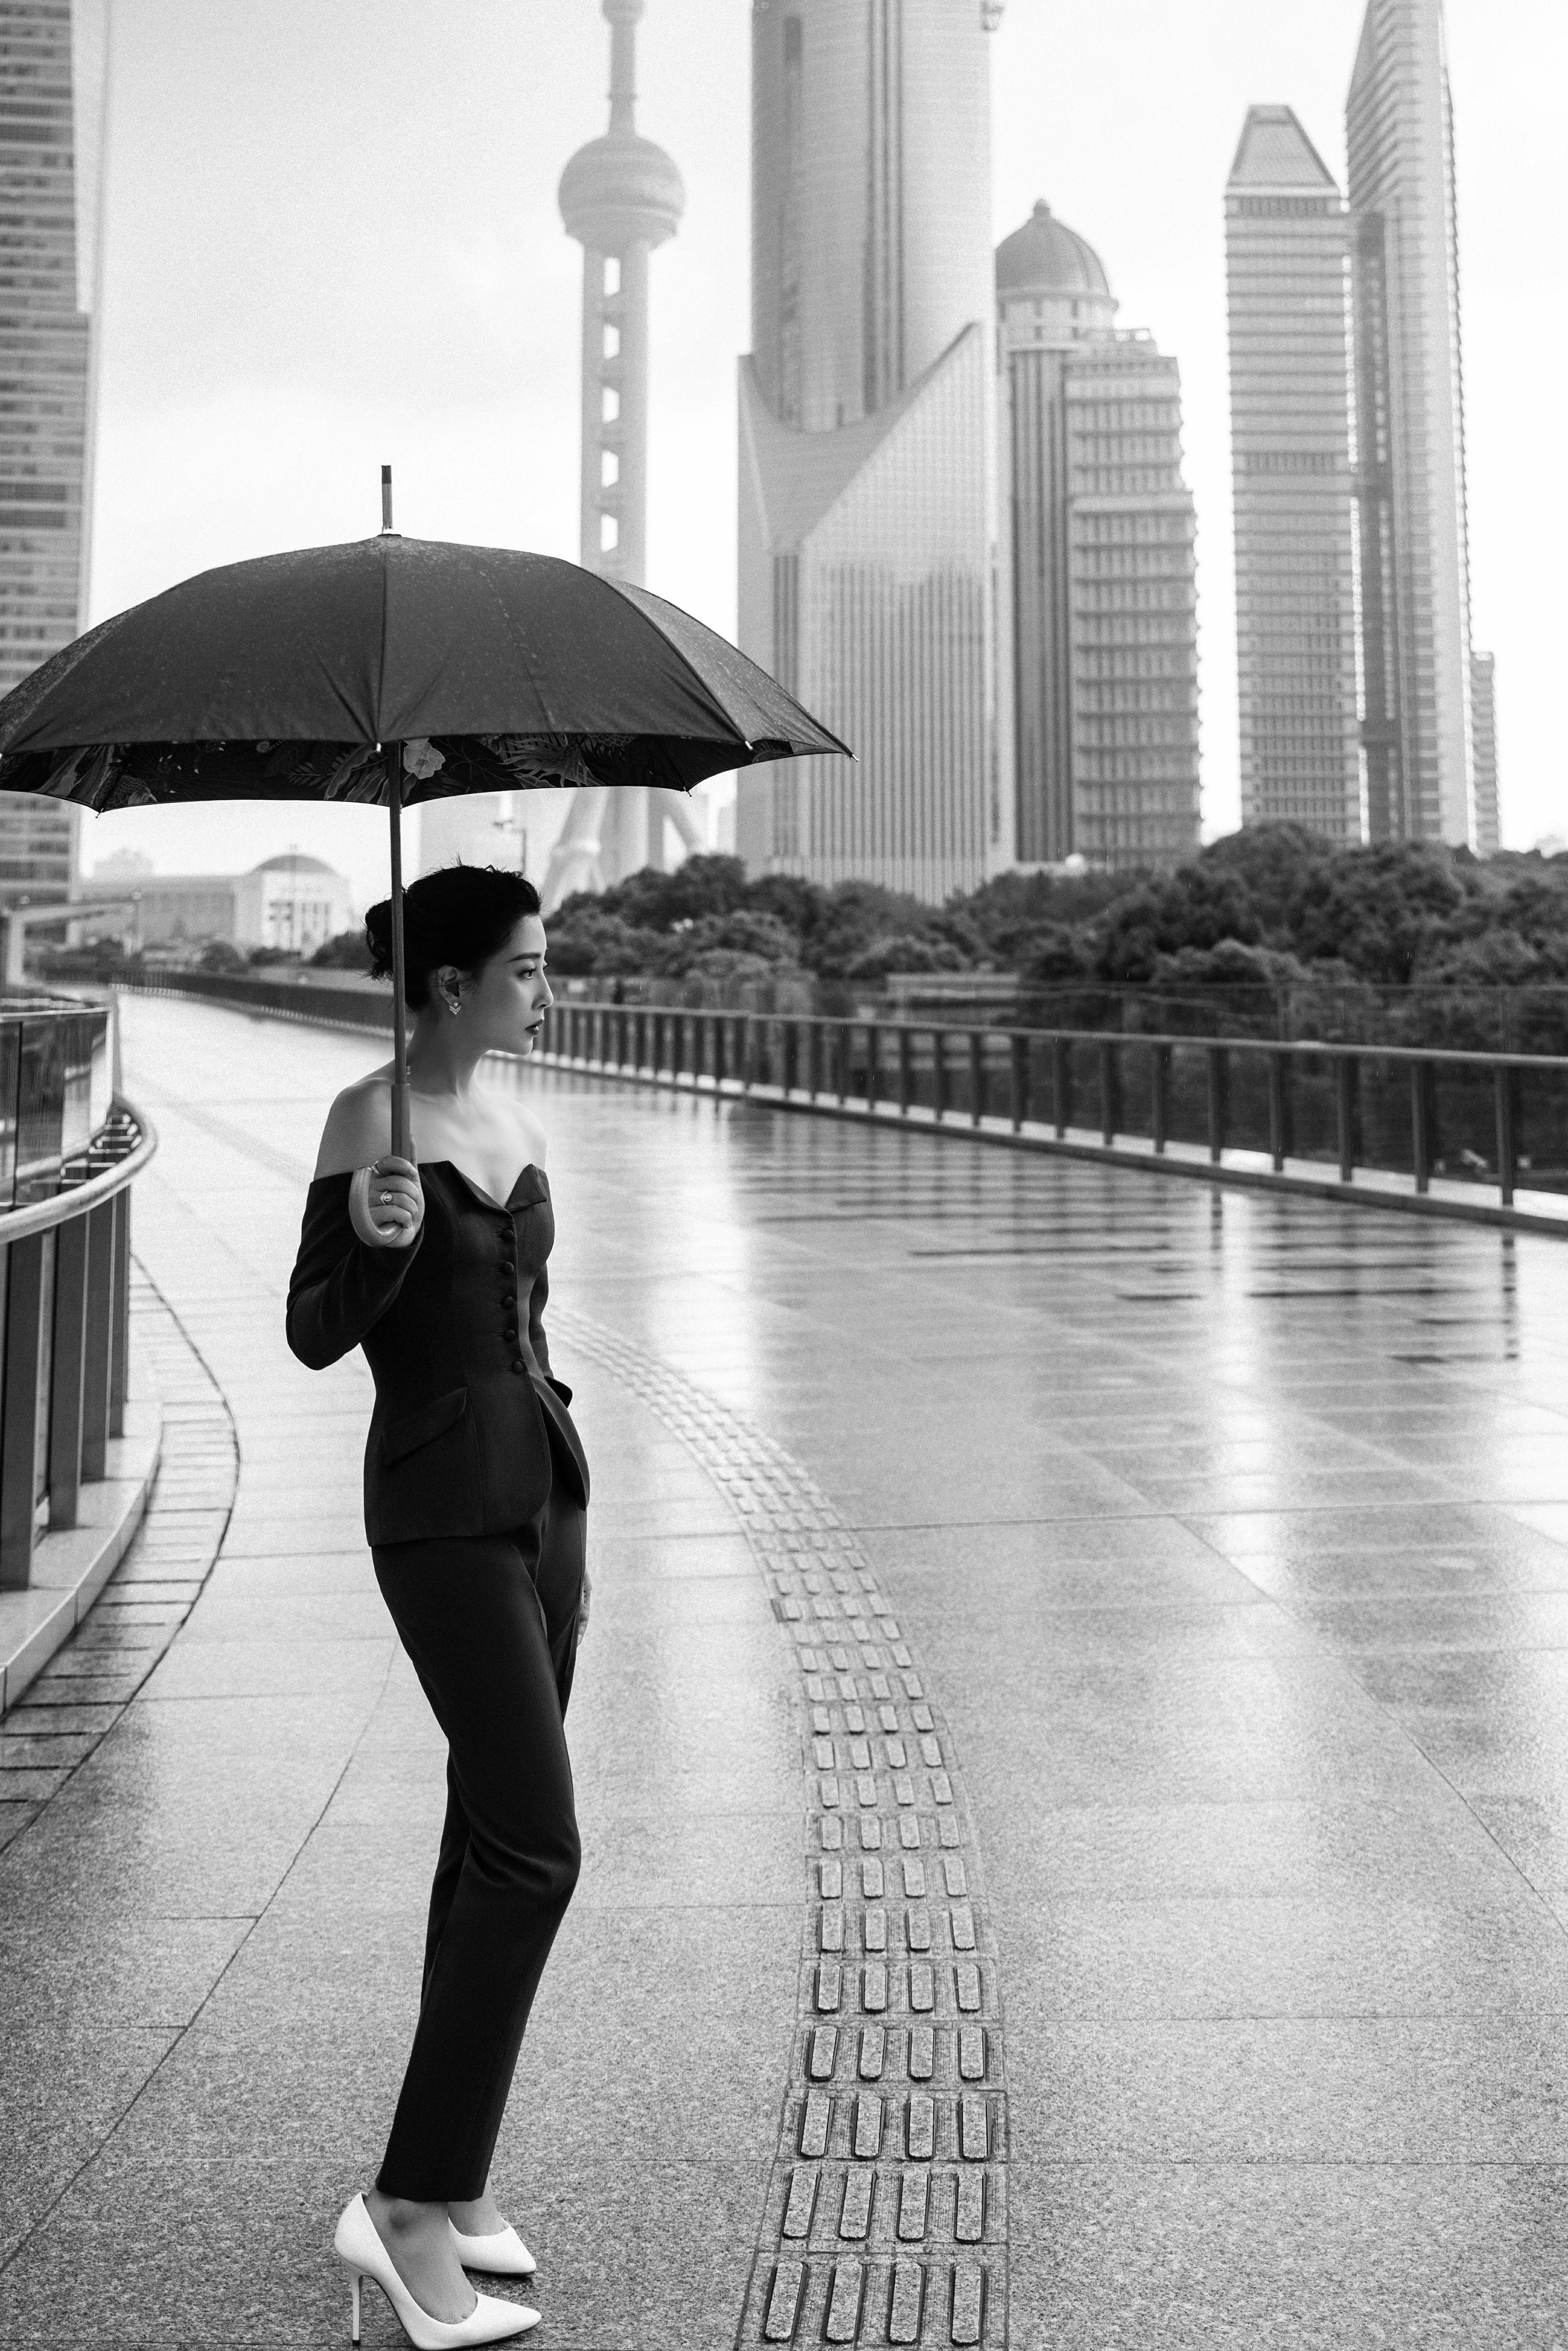 殷桃雨中撑伞漫步上海街头 一字肩西装套装潇洒利落,